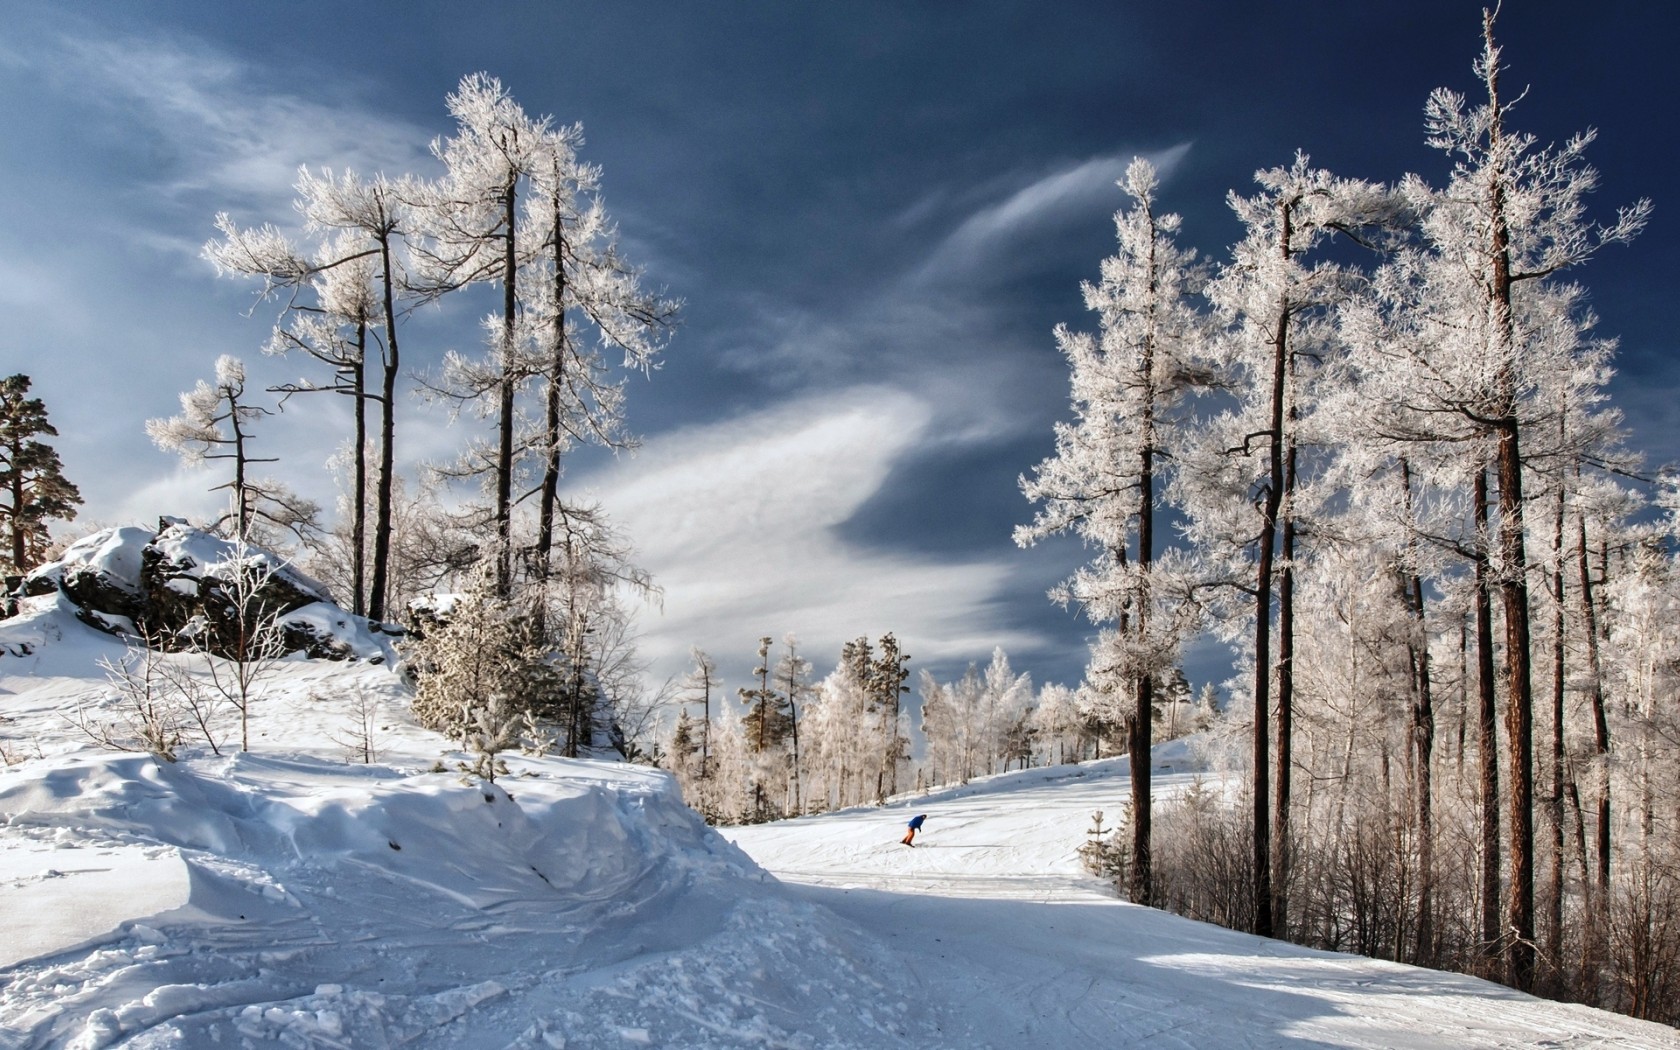 Скачать обои бесплатно Зима, Снег, Дерево, Виды Спорта, Катание На Сноуборде картинка на рабочий стол ПК